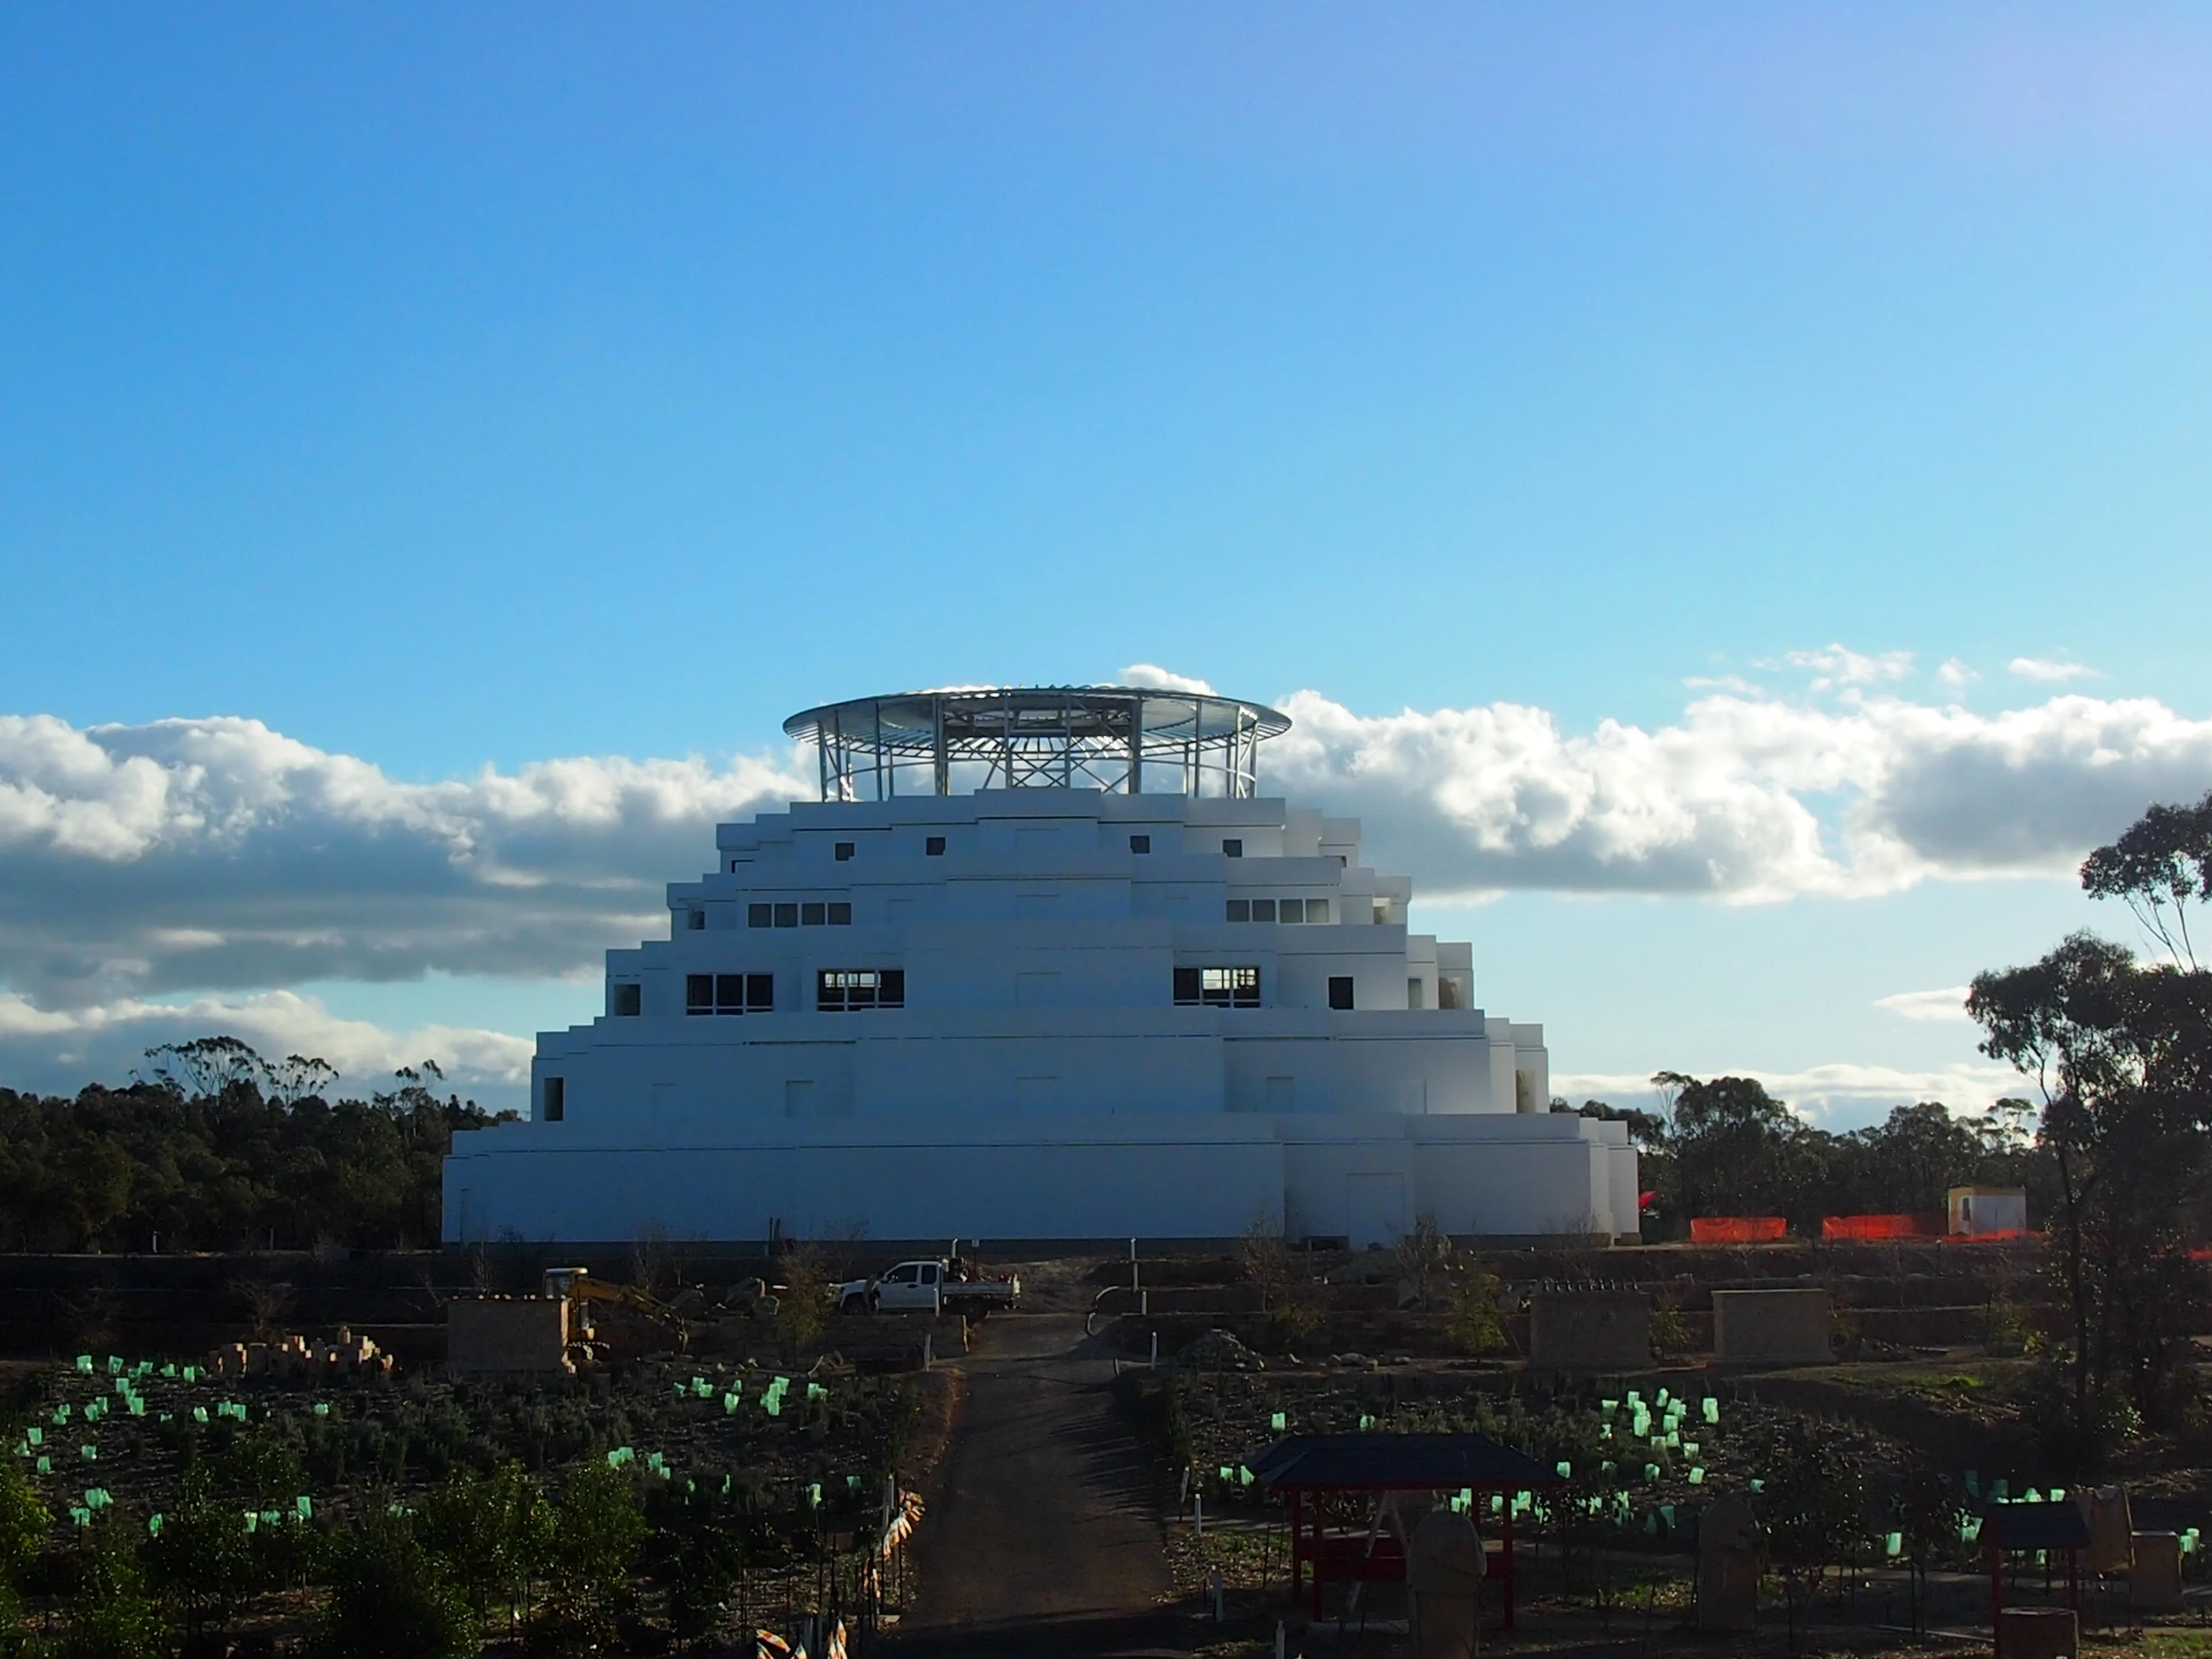 The Great Stupa of Universal Compassion in Bendigo, Victoria.